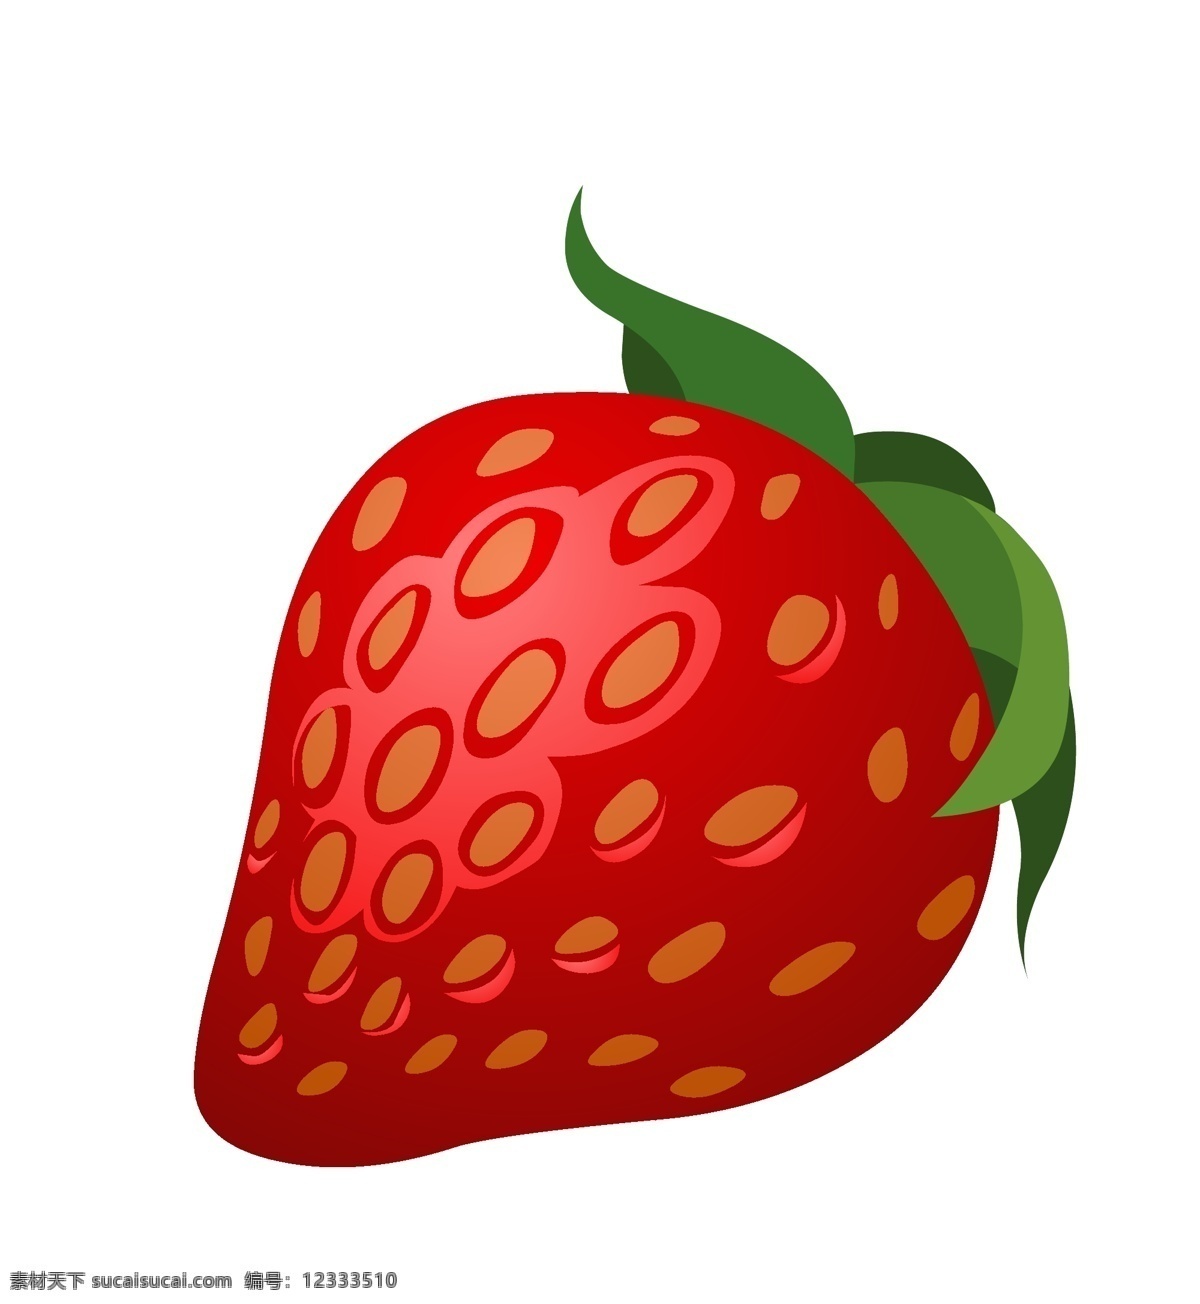 矢量草莓插图 矢量 水果 草莓 插图 红色草莓 标志图标 其他图标